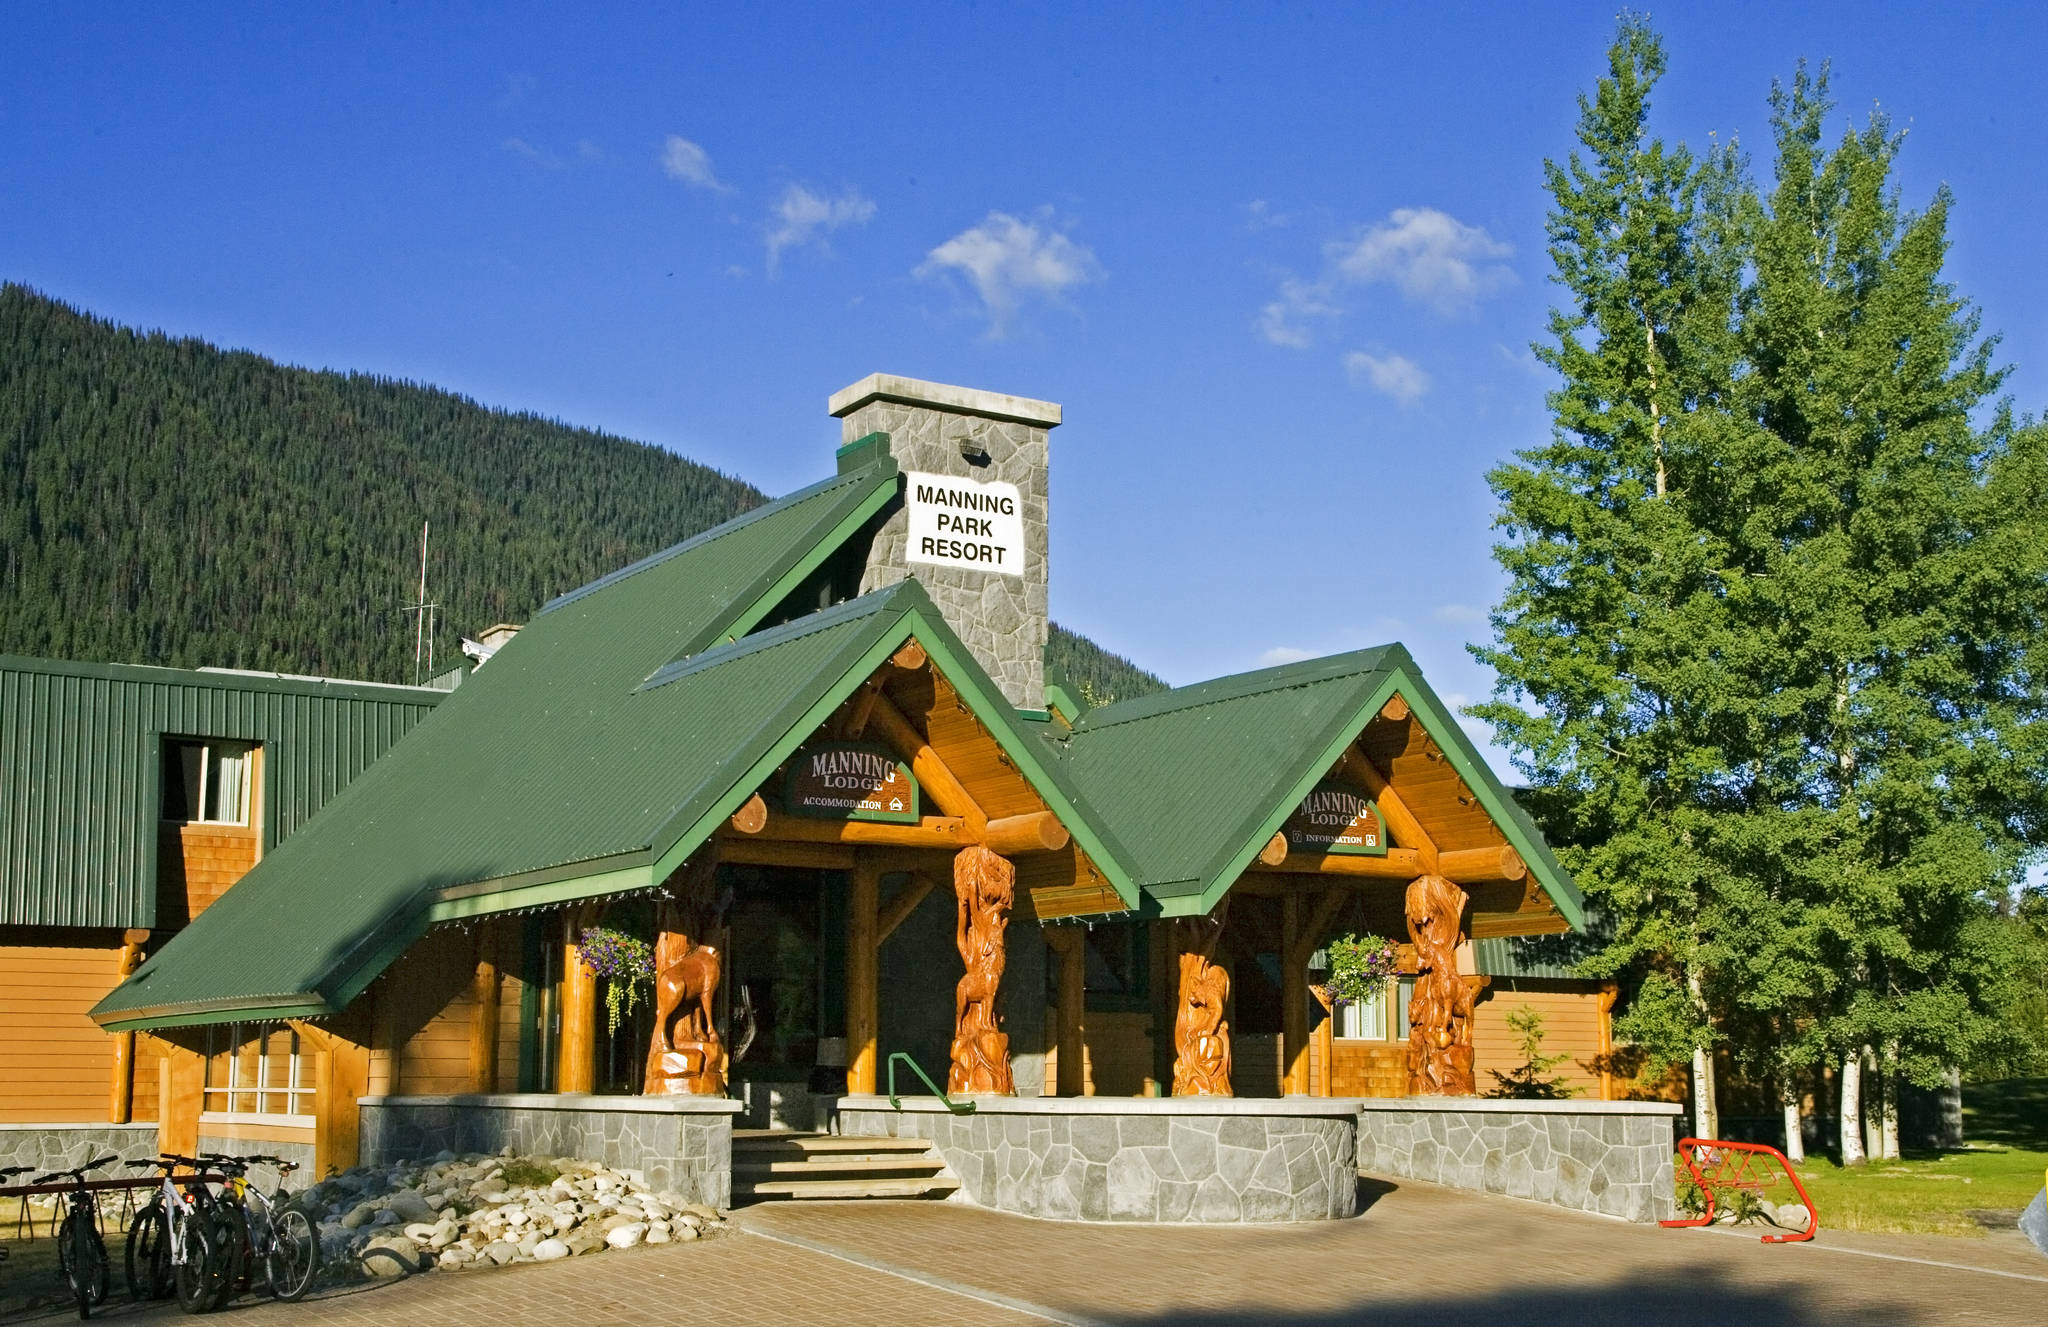 13471907_web1_Manning-Park-Resort-Lodge